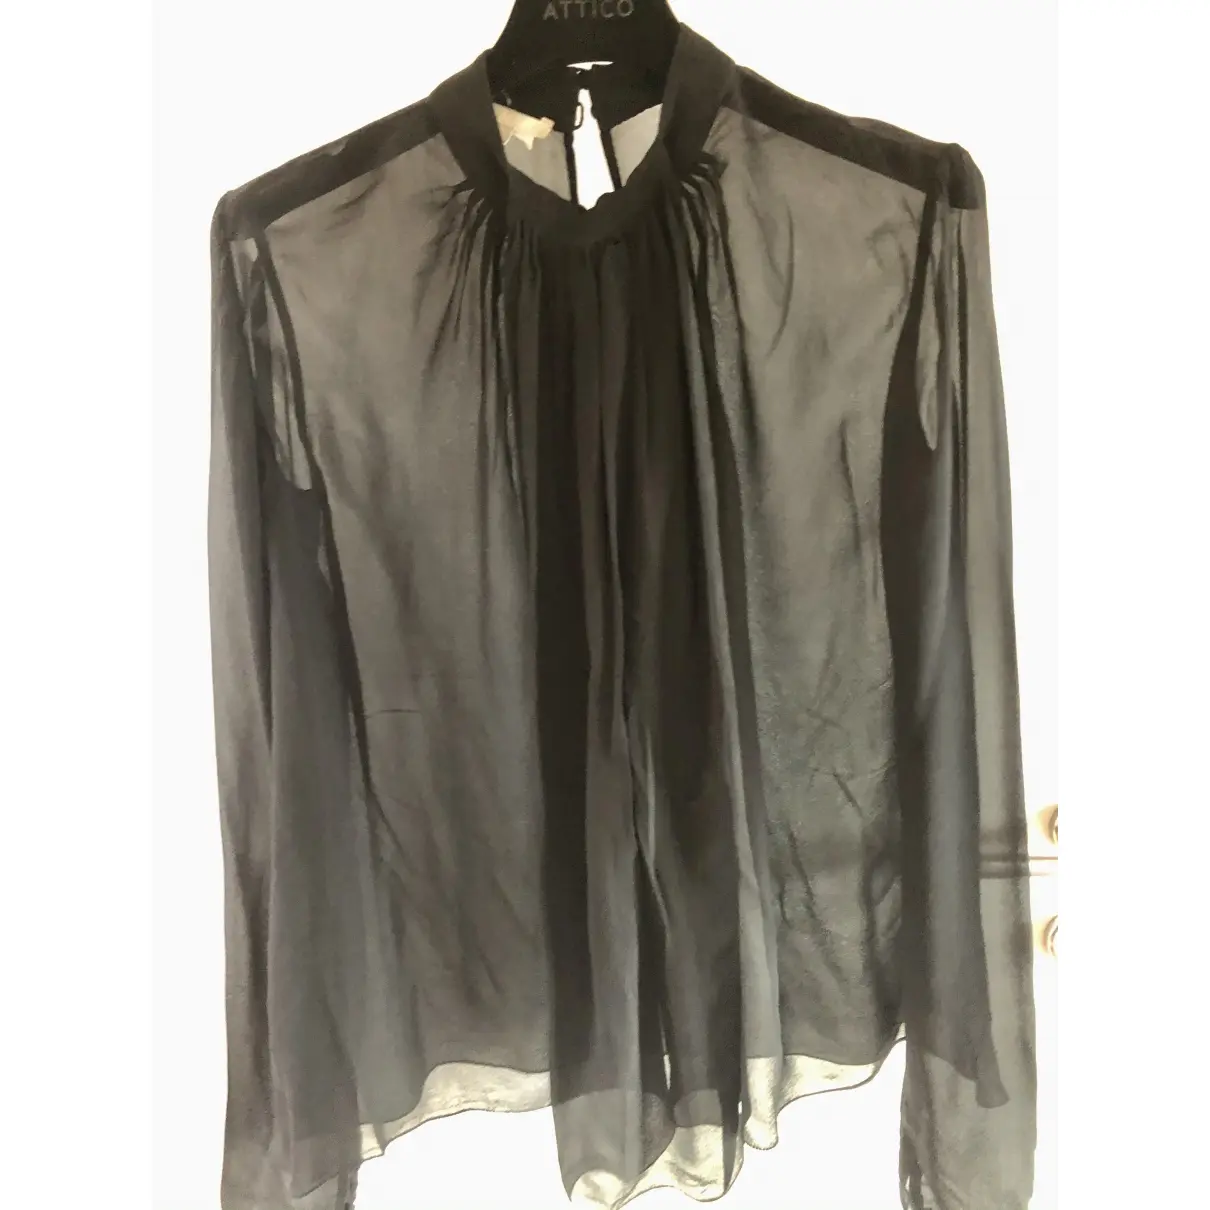 Buy Antonio Berardi Silk blouse online